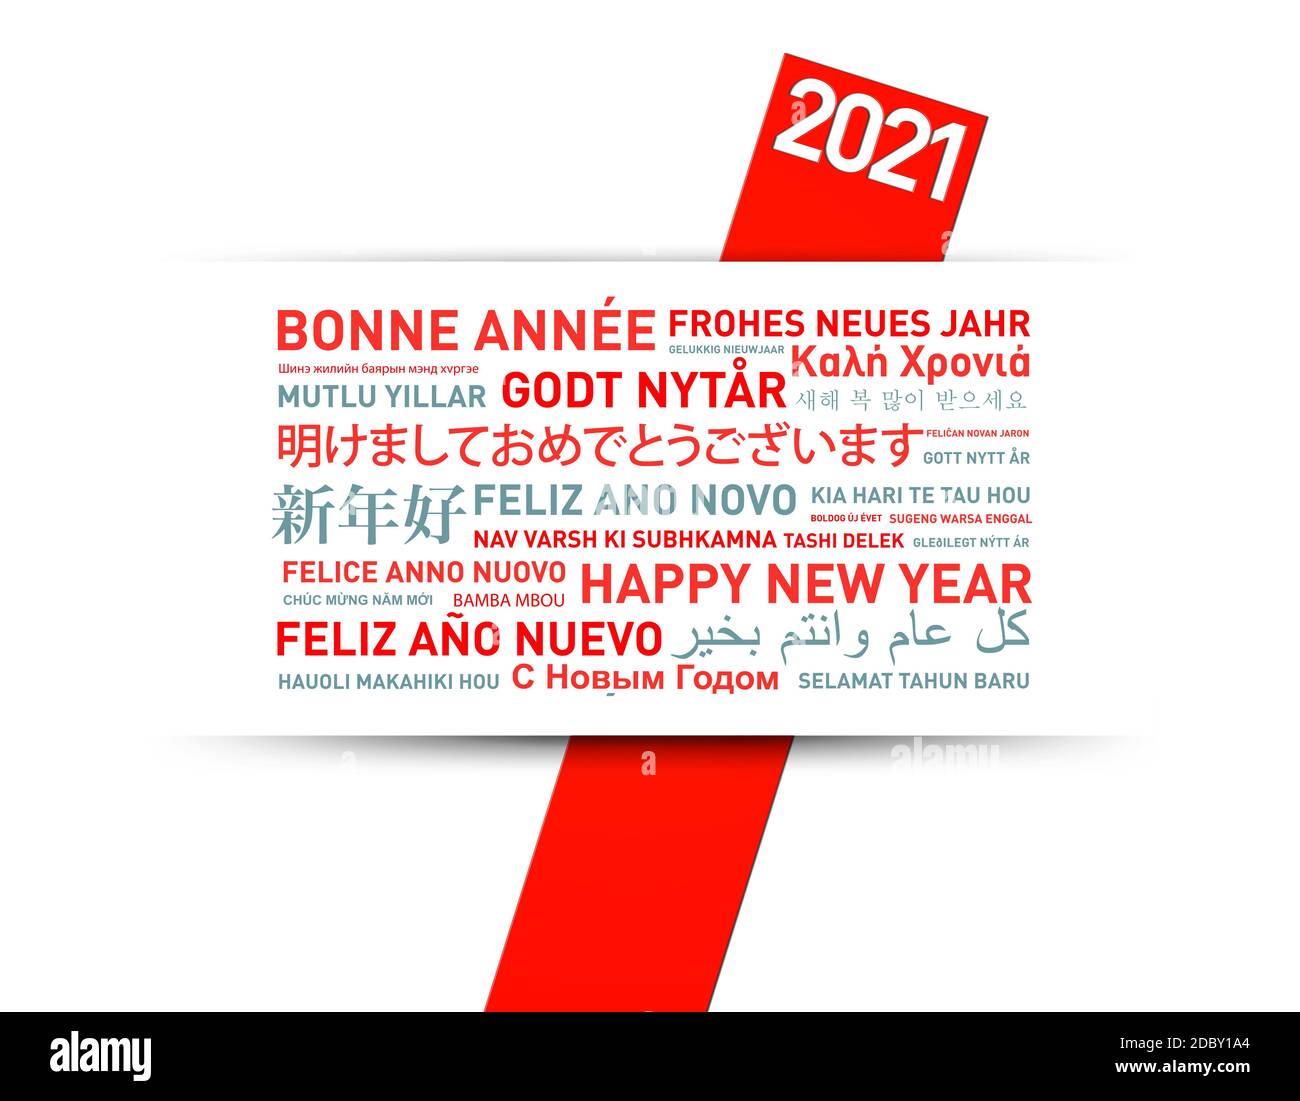 Carte de voeux pour la bonne année 2021 du monde entier différentes langues Banque D'Images